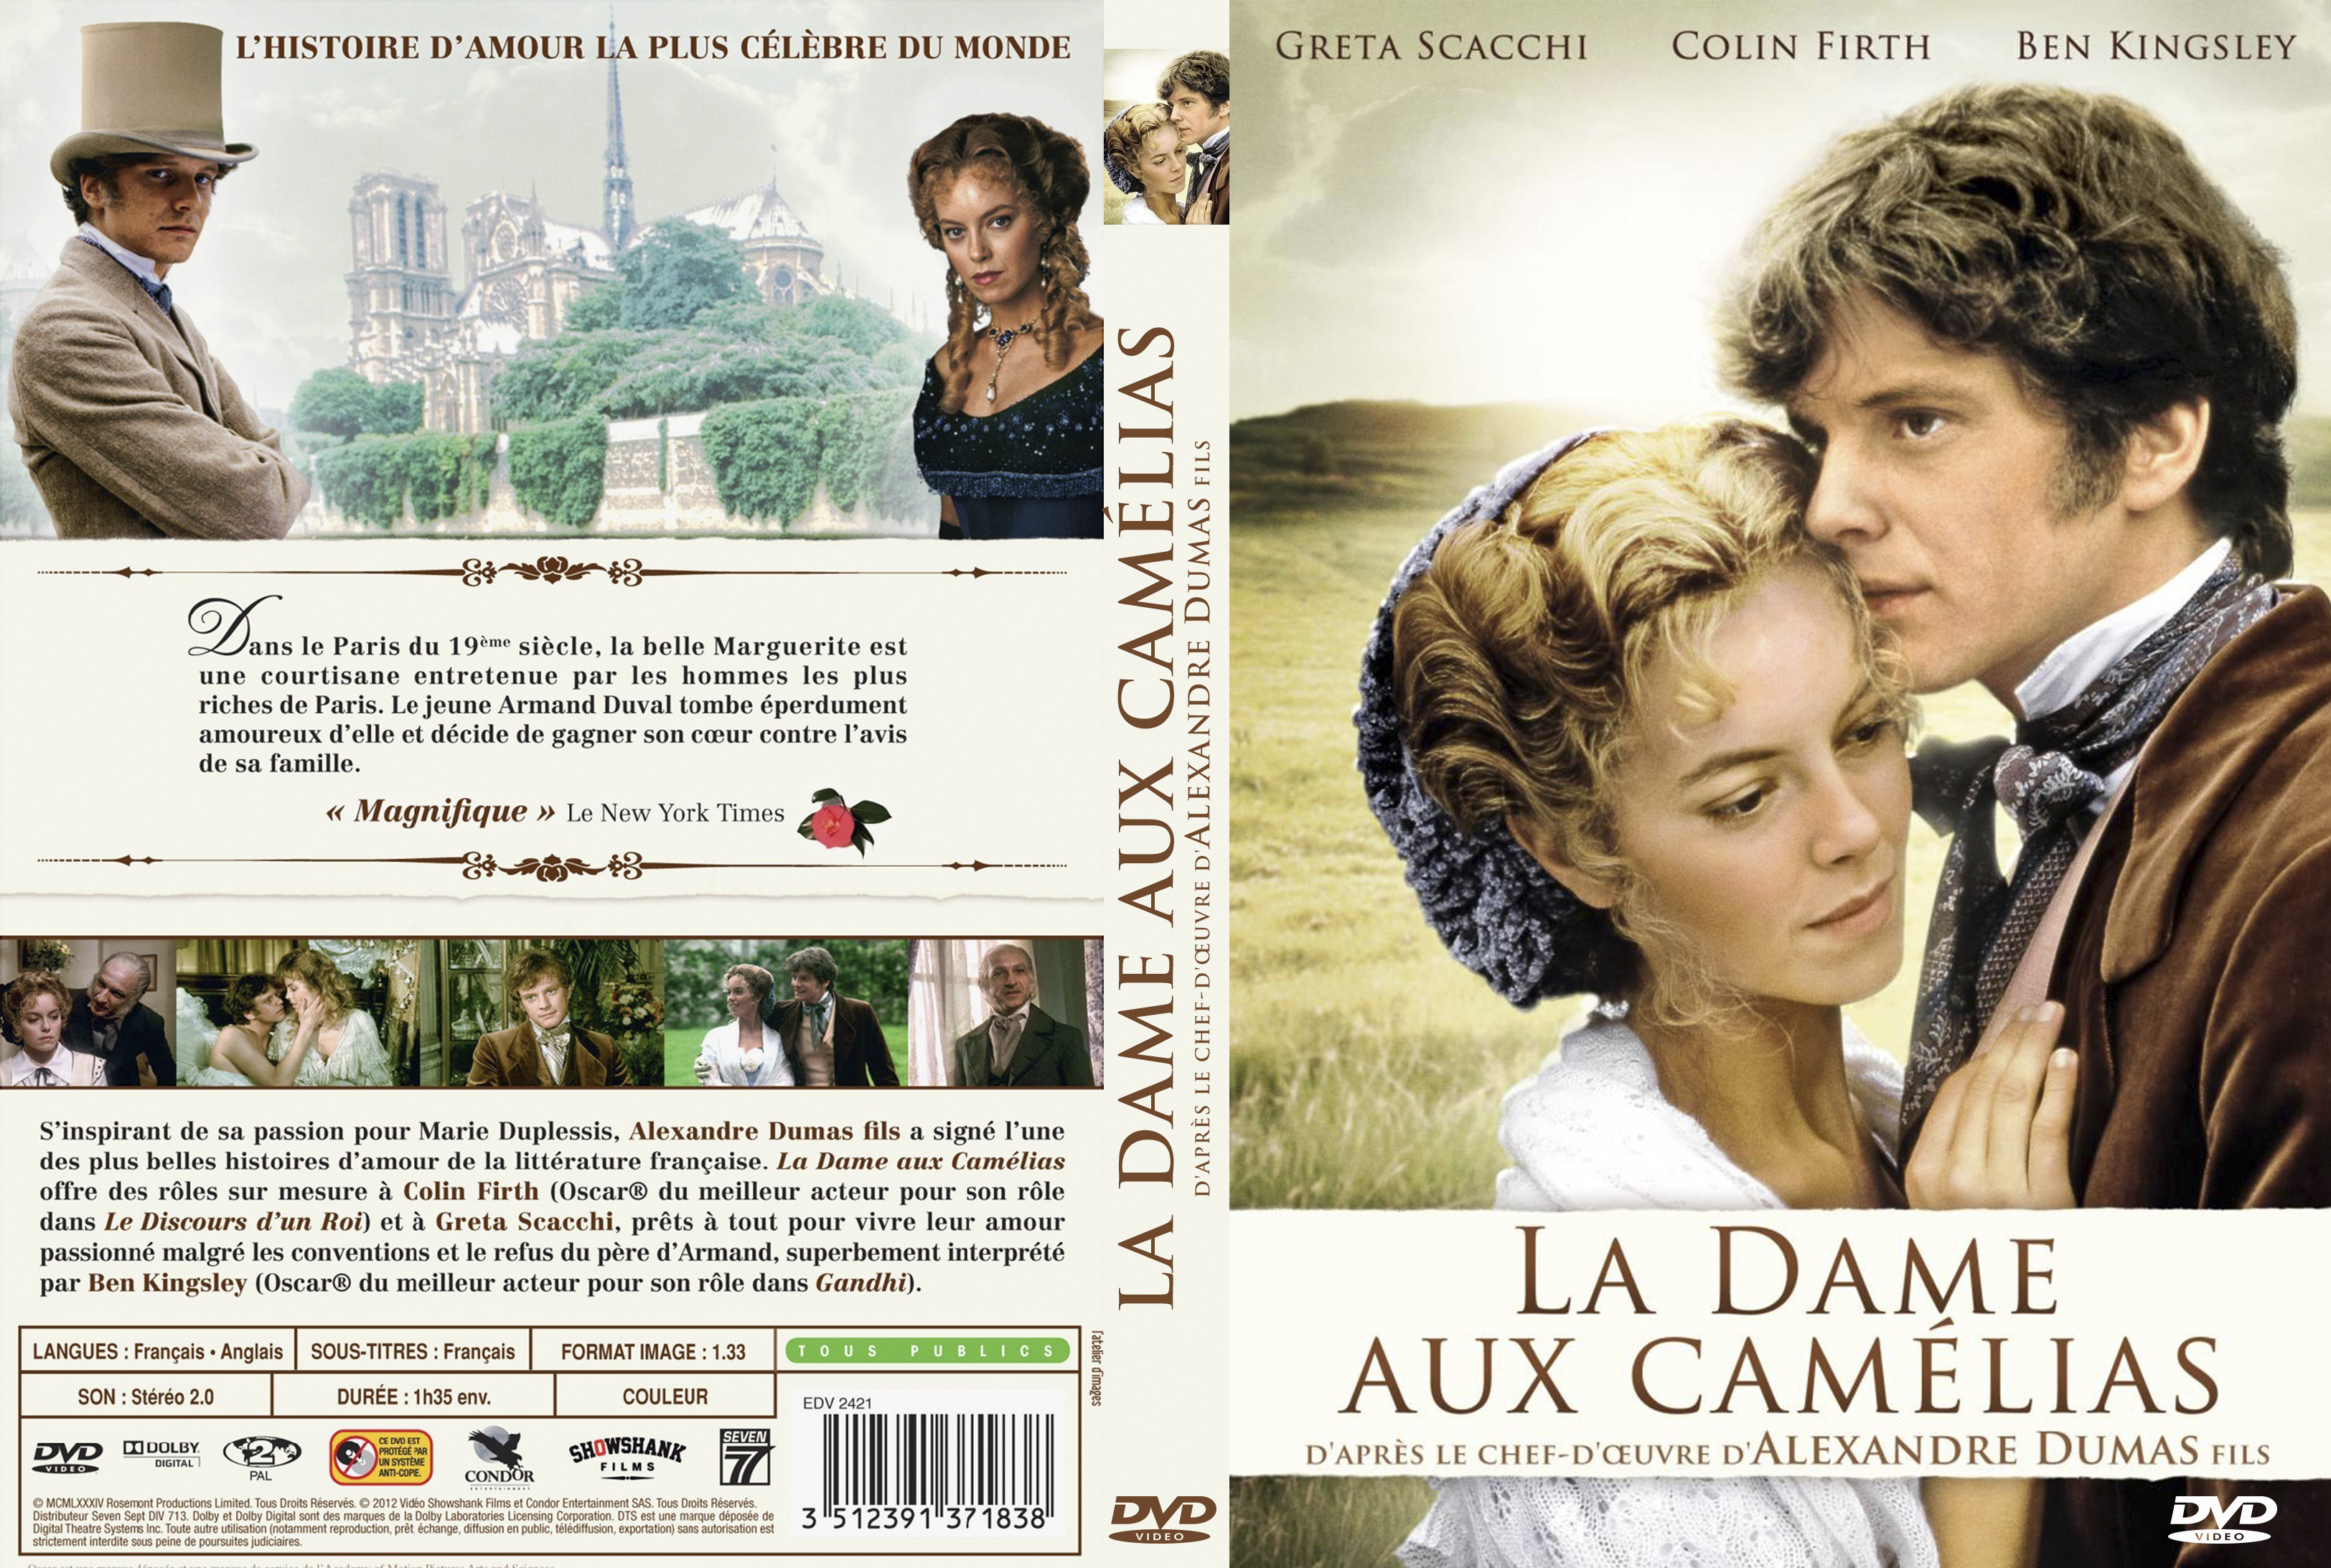 Jaquette DVD La dame aux camlias 1984 custom